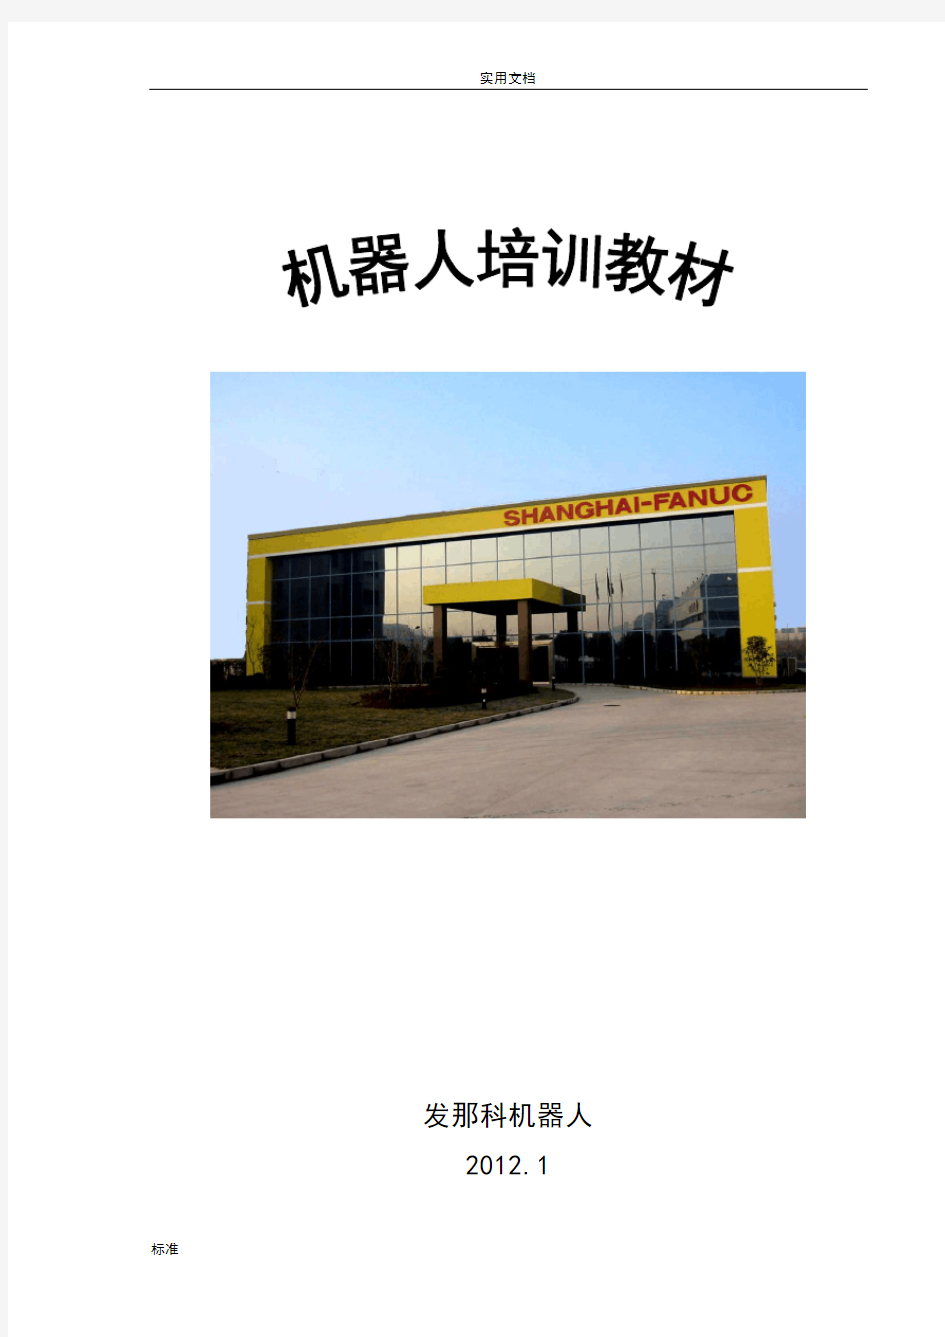 上海发那科(FANUC)机器人有限公司管理系统内部教材